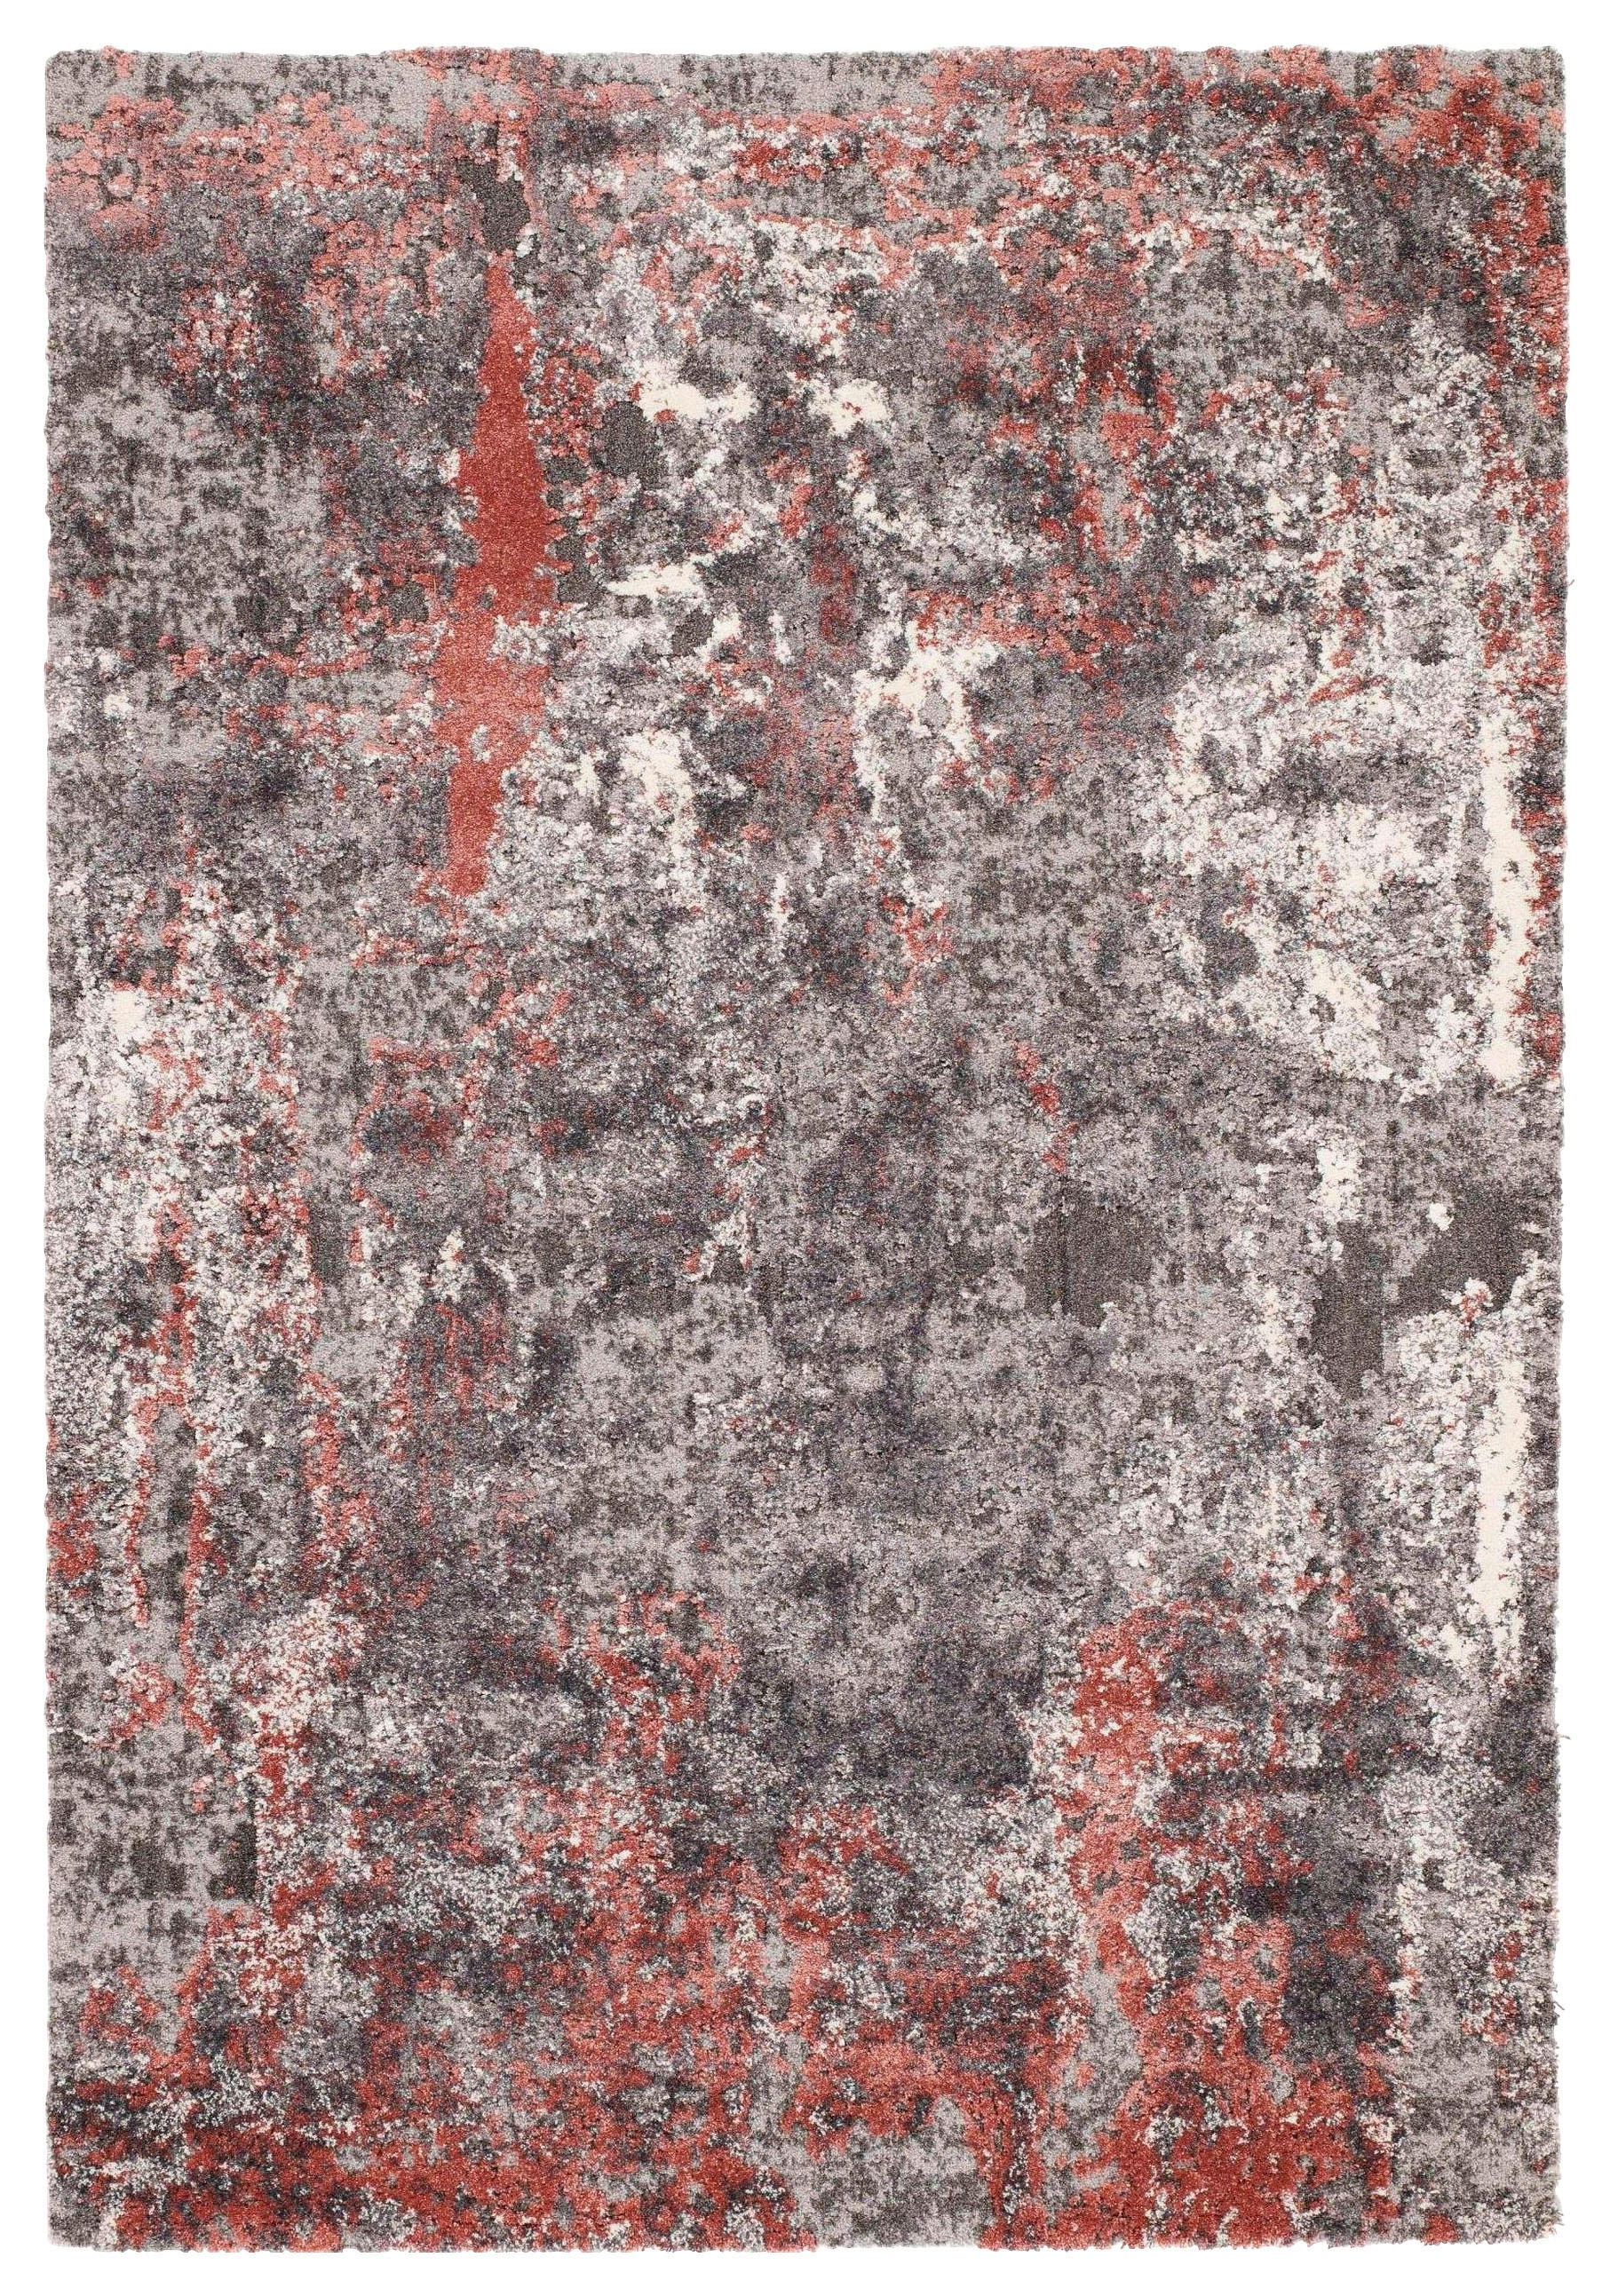 WEBTEPPICH  65/130 cm  Grau, Hellrot   - Hellrot/Grau, Design, Textil (65/130cm) - Novel